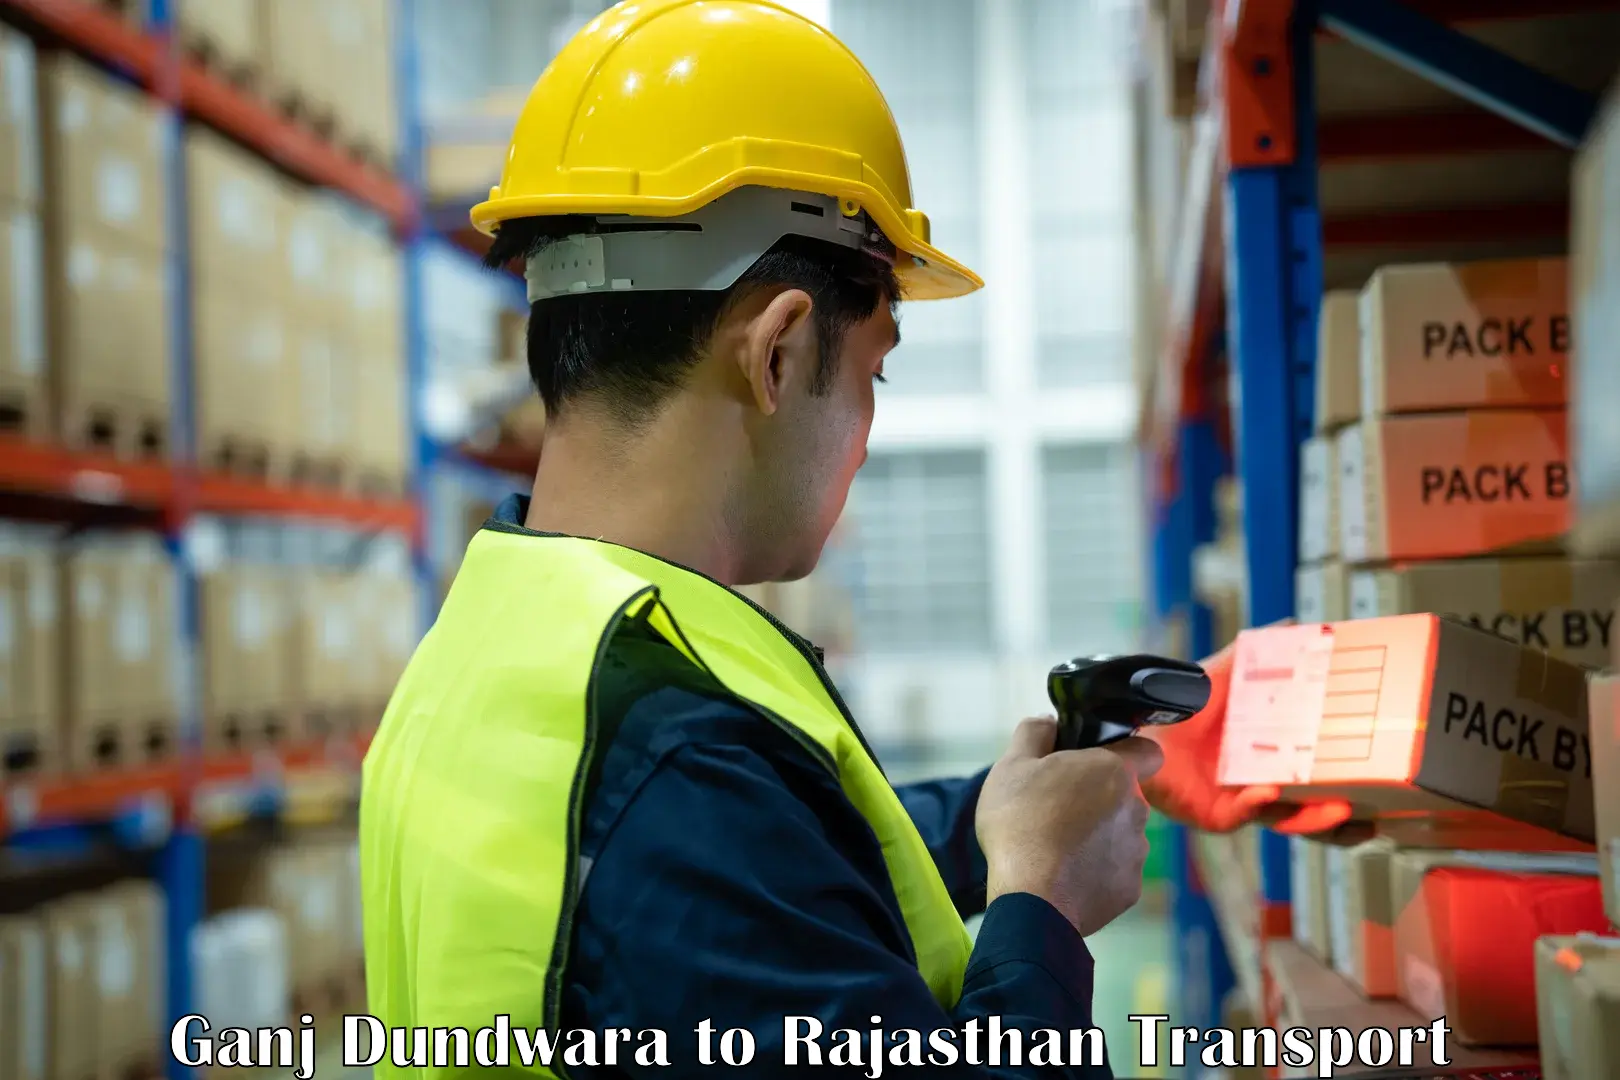 Online transport service Ganj Dundwara to Rajasthan